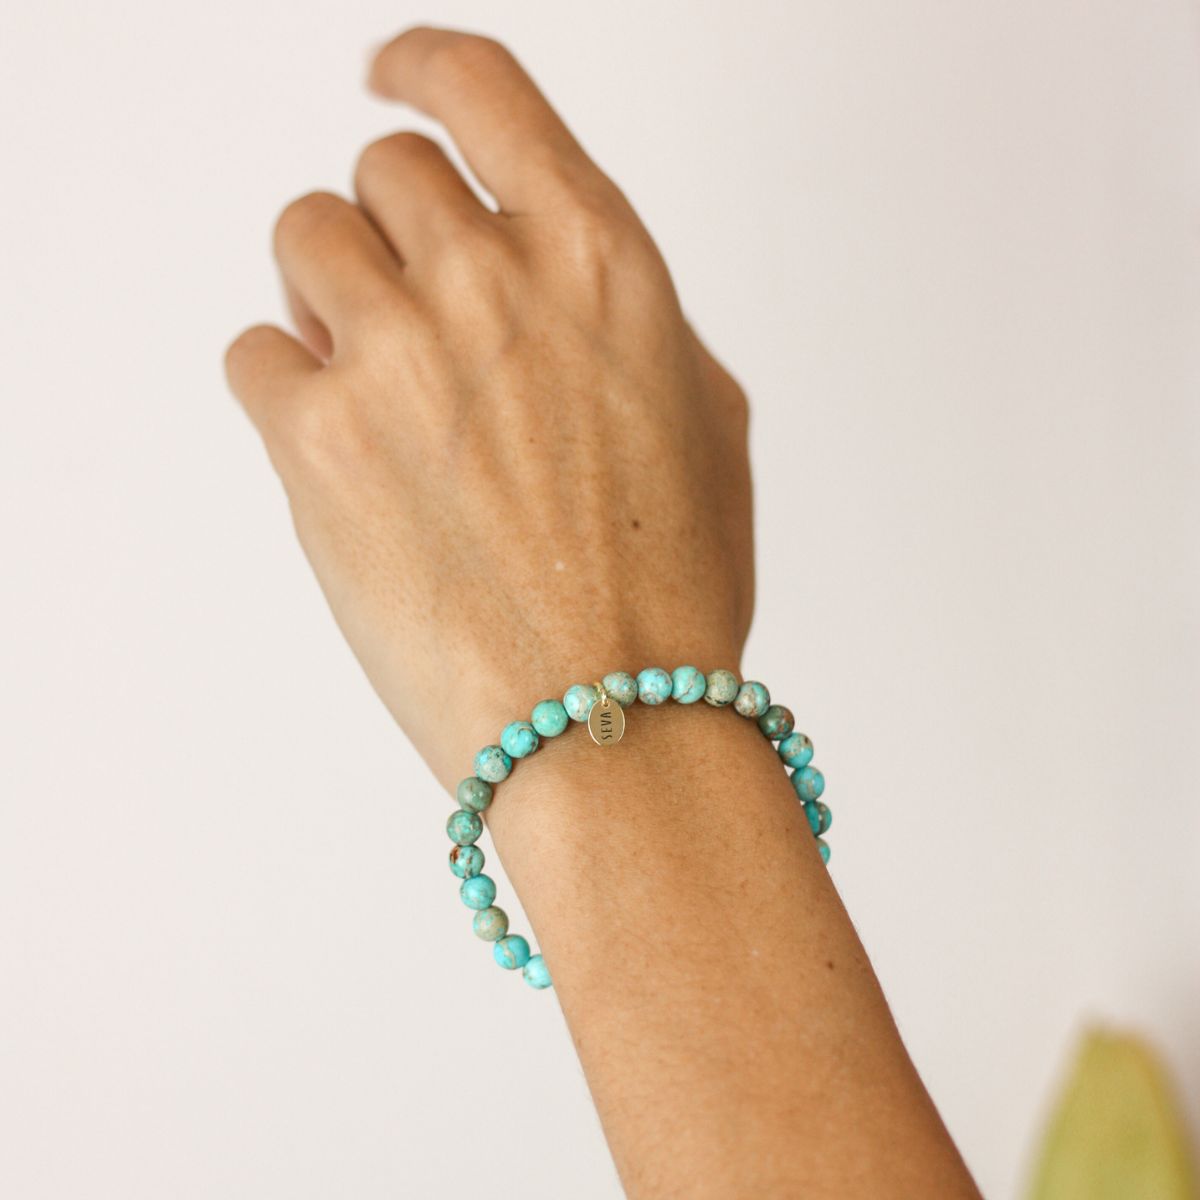 a woman wearing a stone bracelet on her wrist